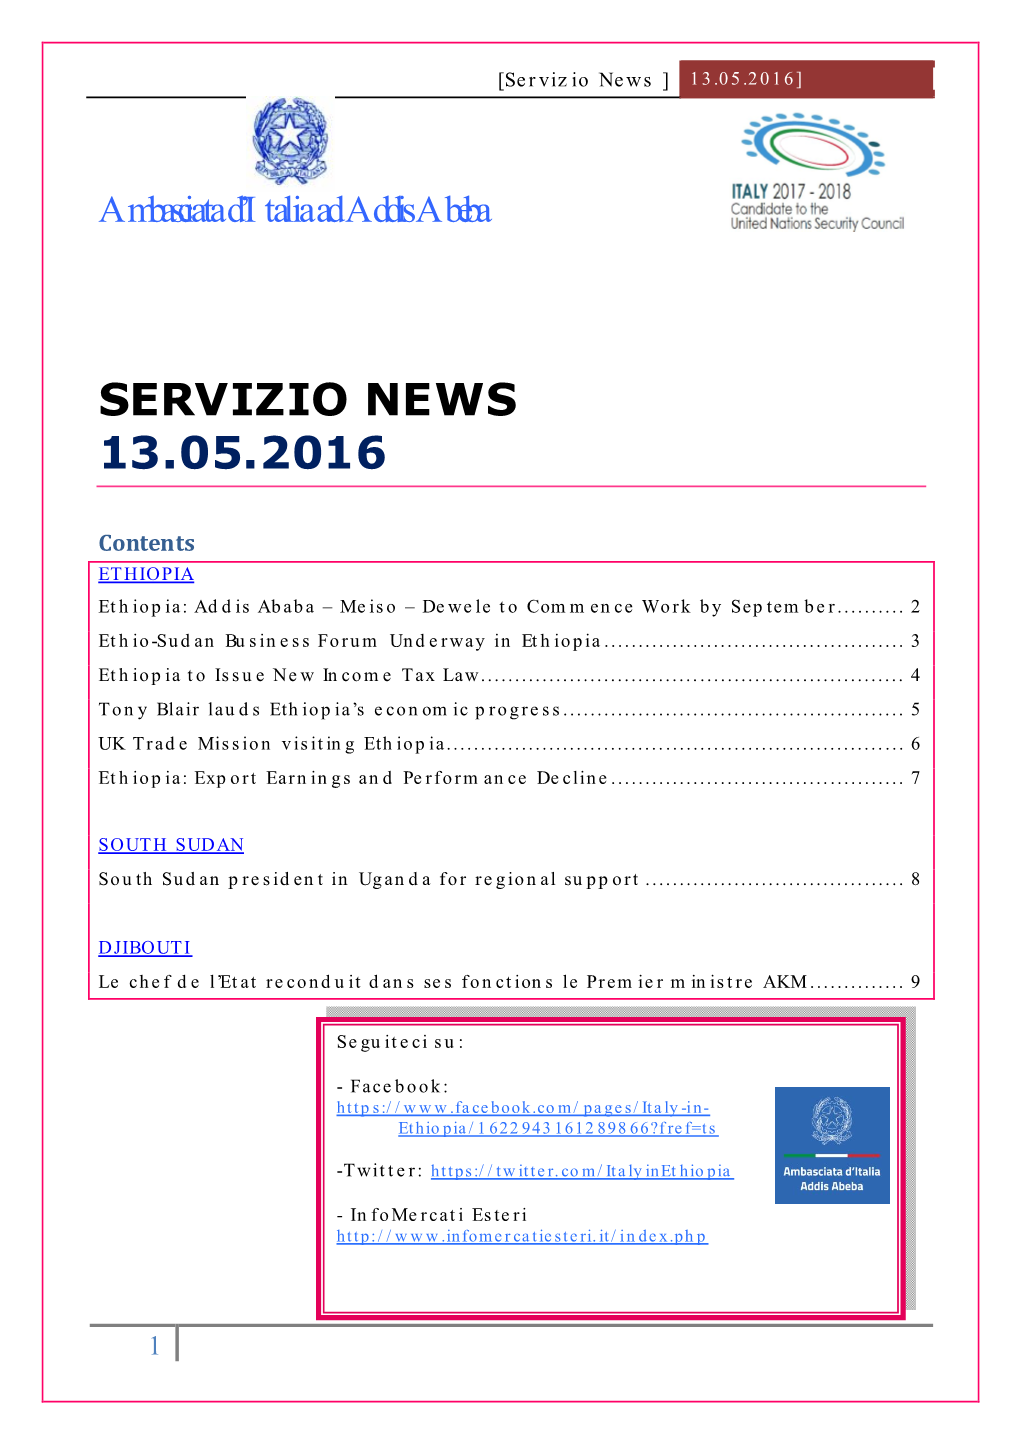 Servizio News 13.05.2016